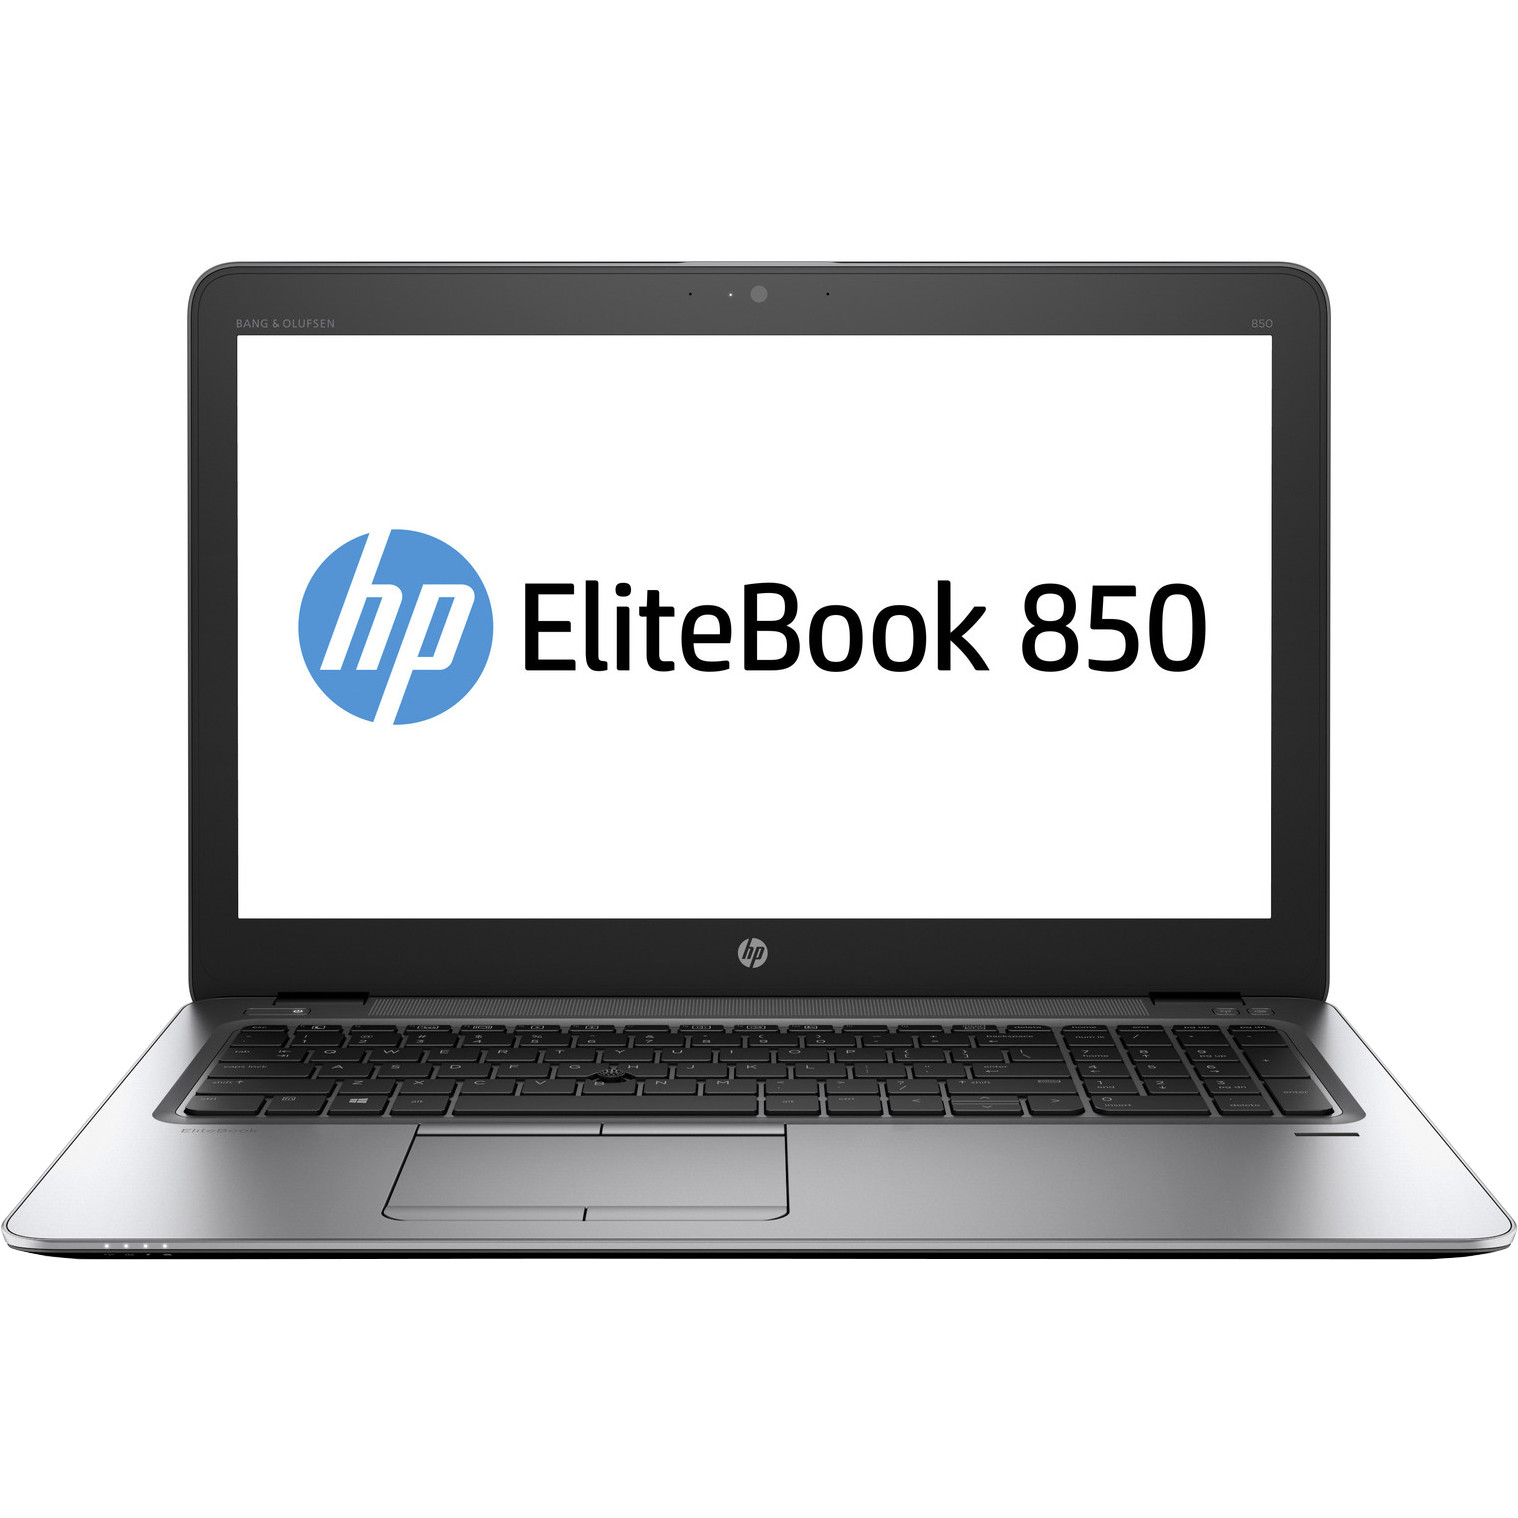  Laptop HP EliteBook 850 G3, Intel Core i5-6200U, 4GB DDR4, HDD 500GB, Intel HD Graphics, Windows 10 Pro 